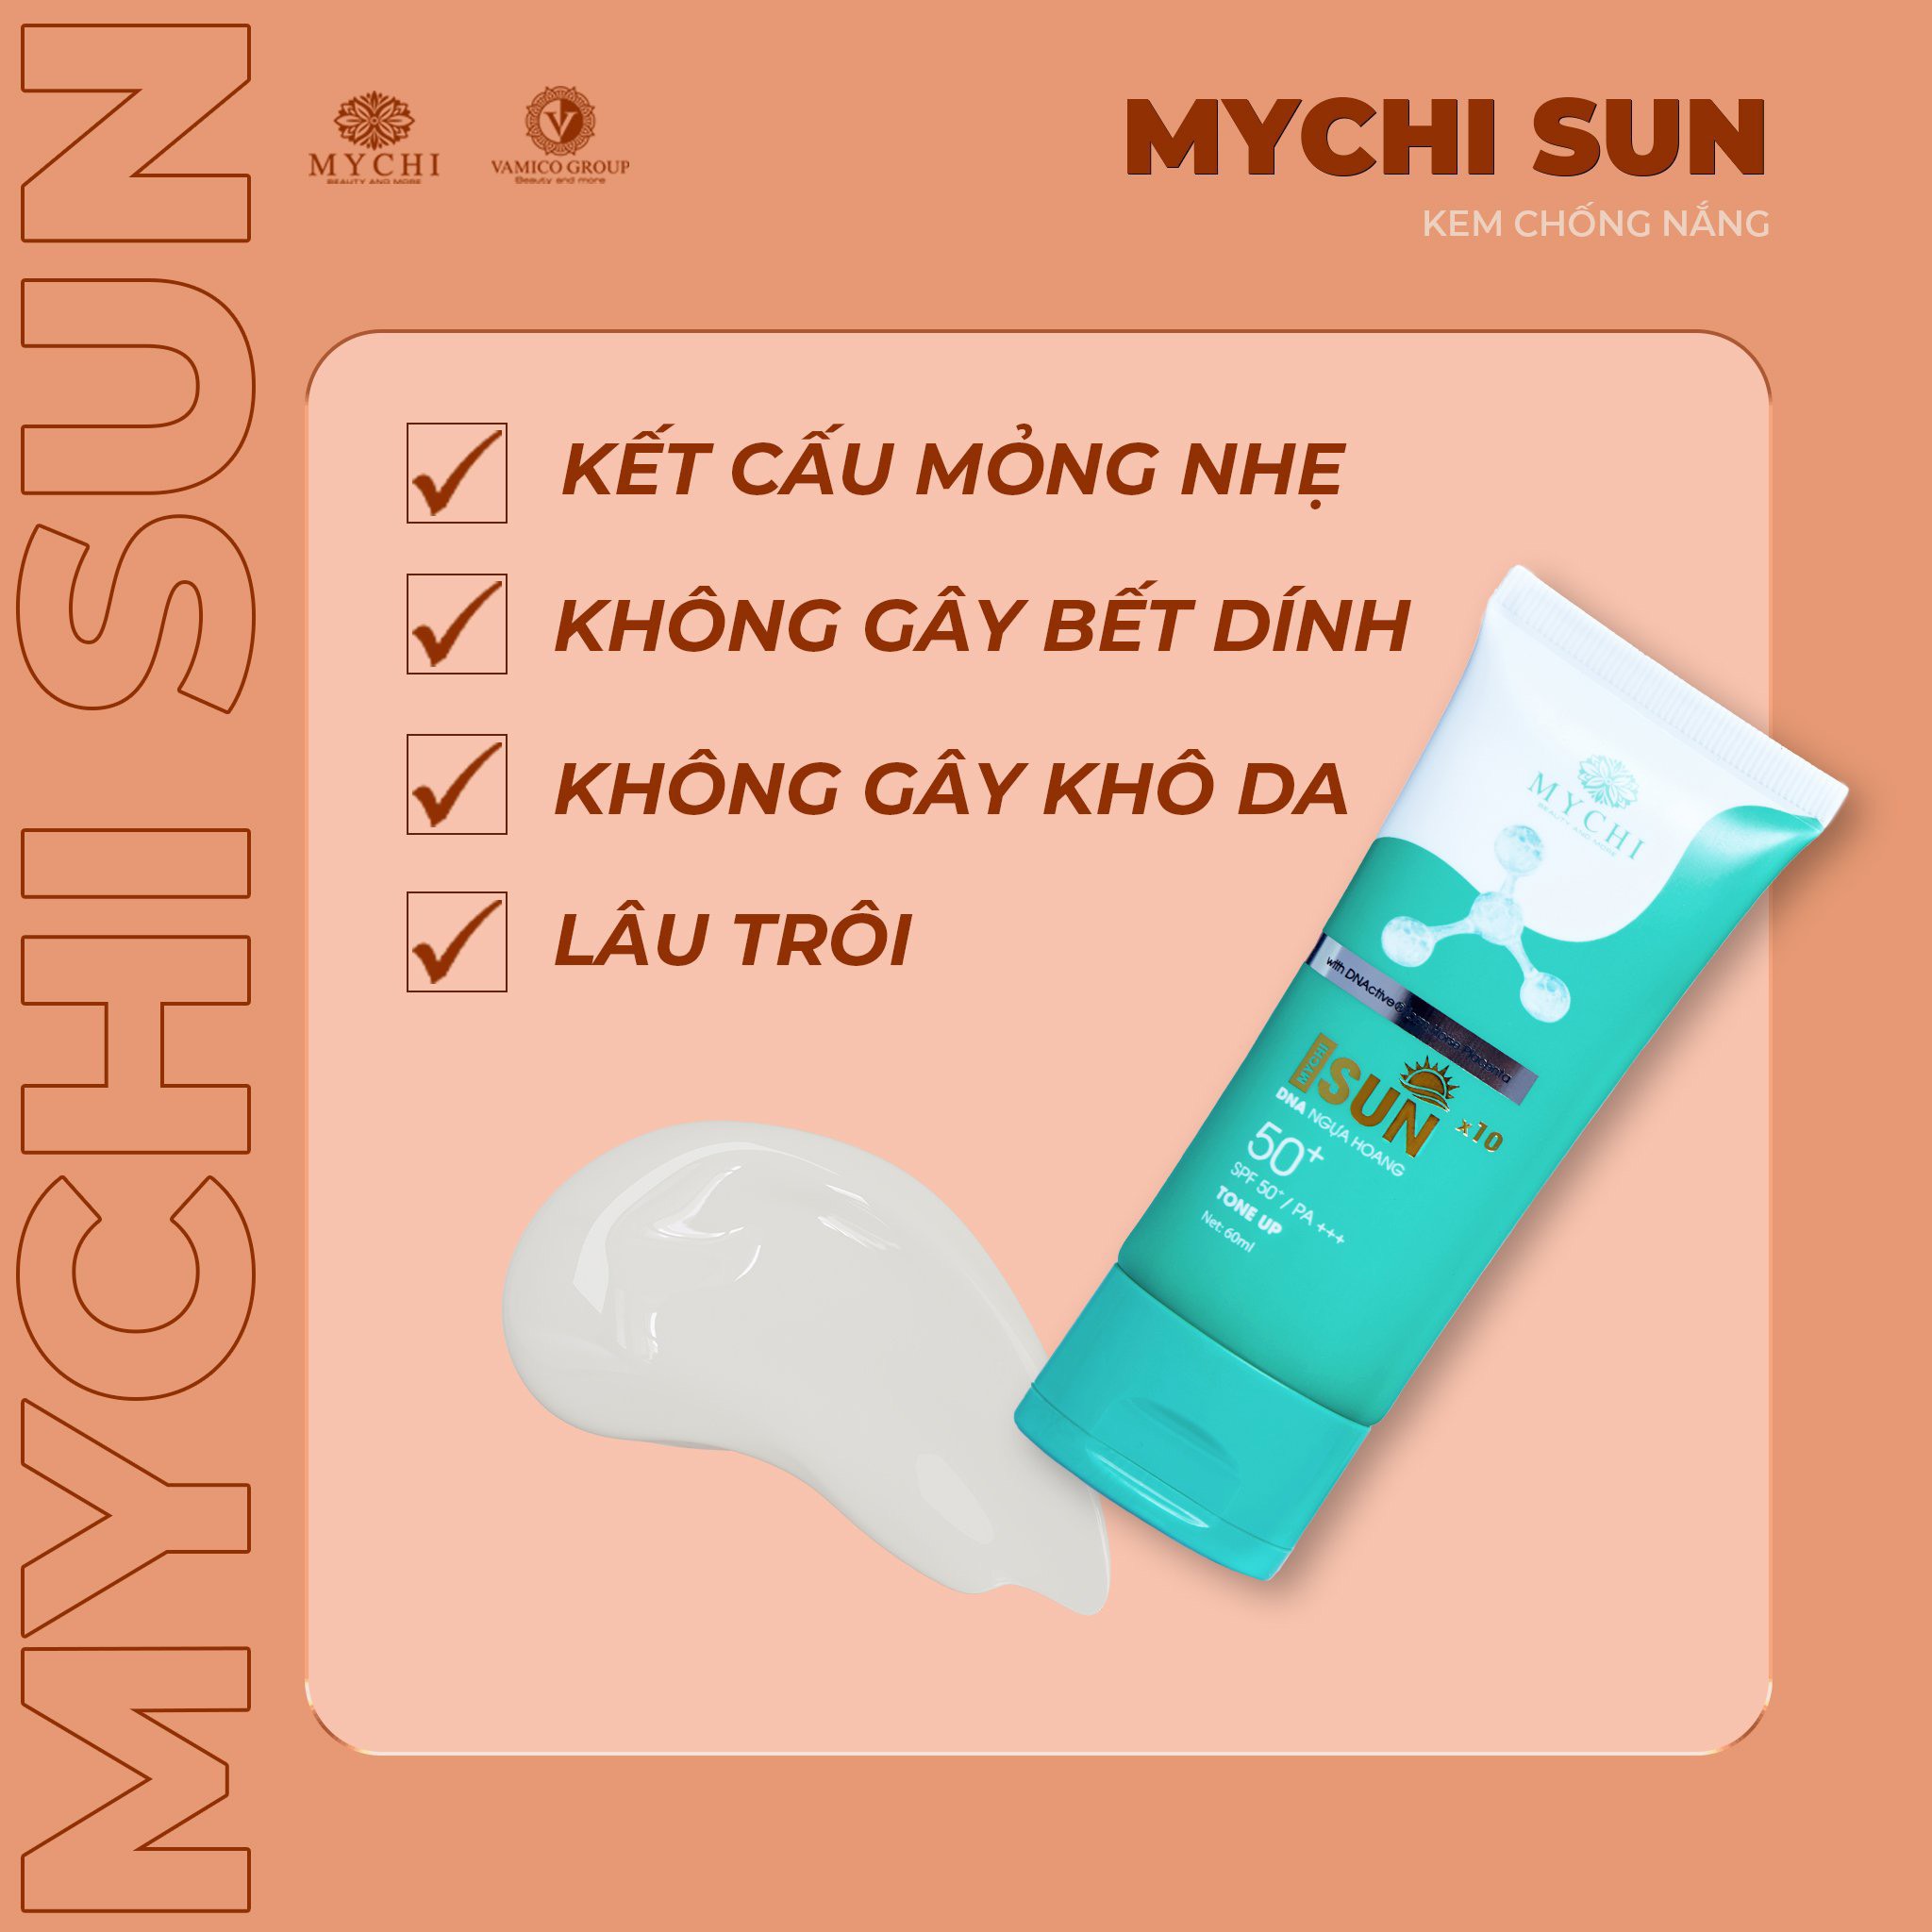 Kem chống nắng Mychi Sun